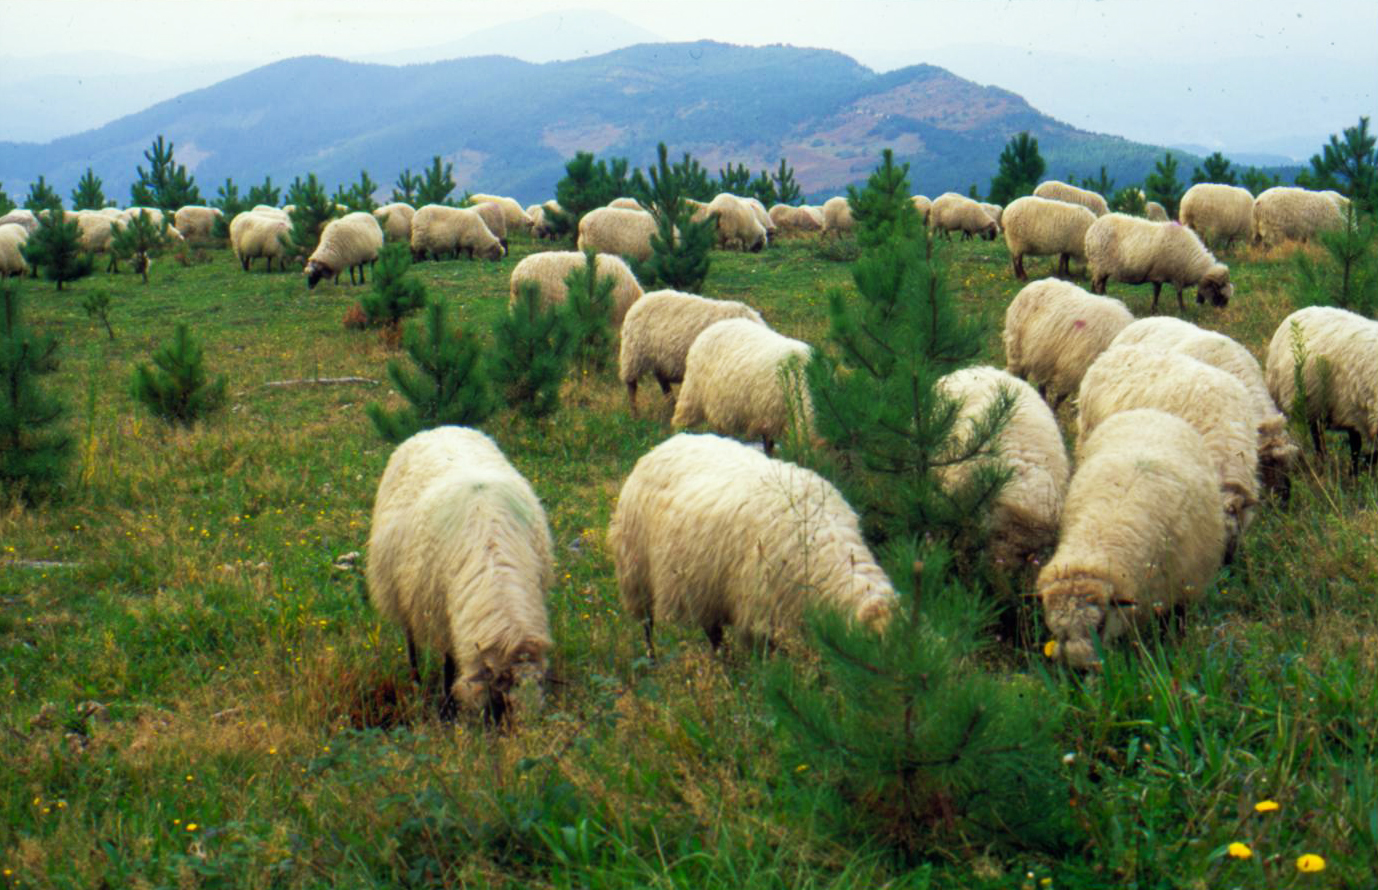 Flock of sheep grazing in Mount Oiz (Bizkaia), 2002. José Ignacio García Muñoz